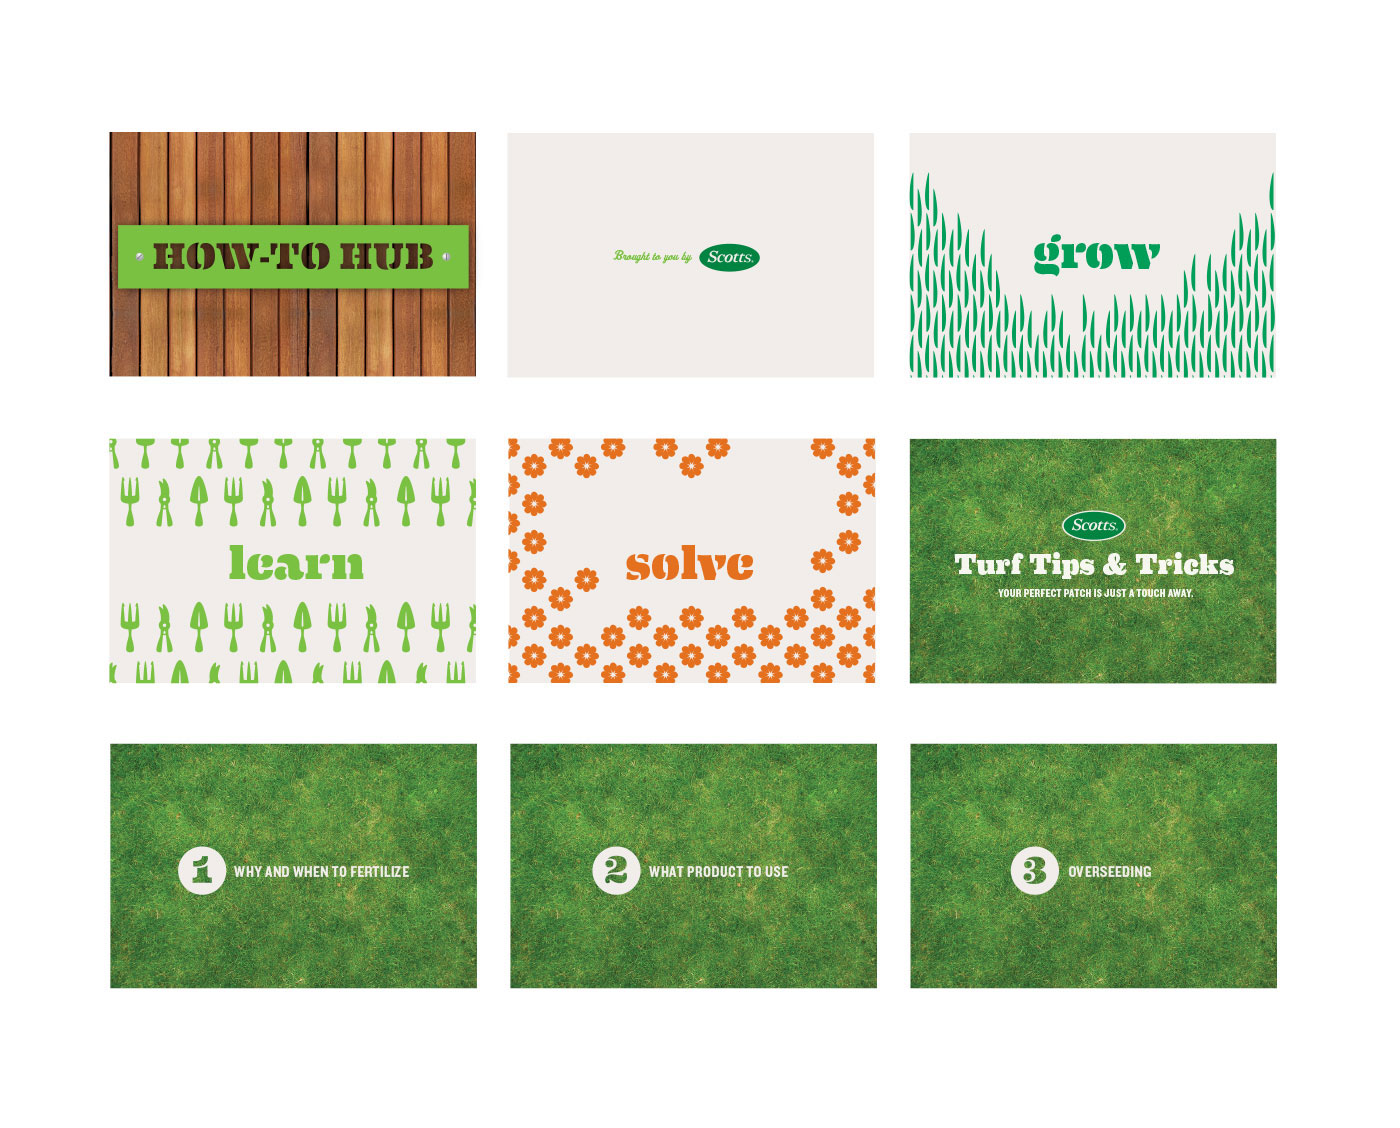 Sam Soulek Soulseven minneapolis minnesota scotts Miracle-Gro Ace Hardware Retail retail environment signing Signage Retail branding pattern green gardening wayfinding iconography